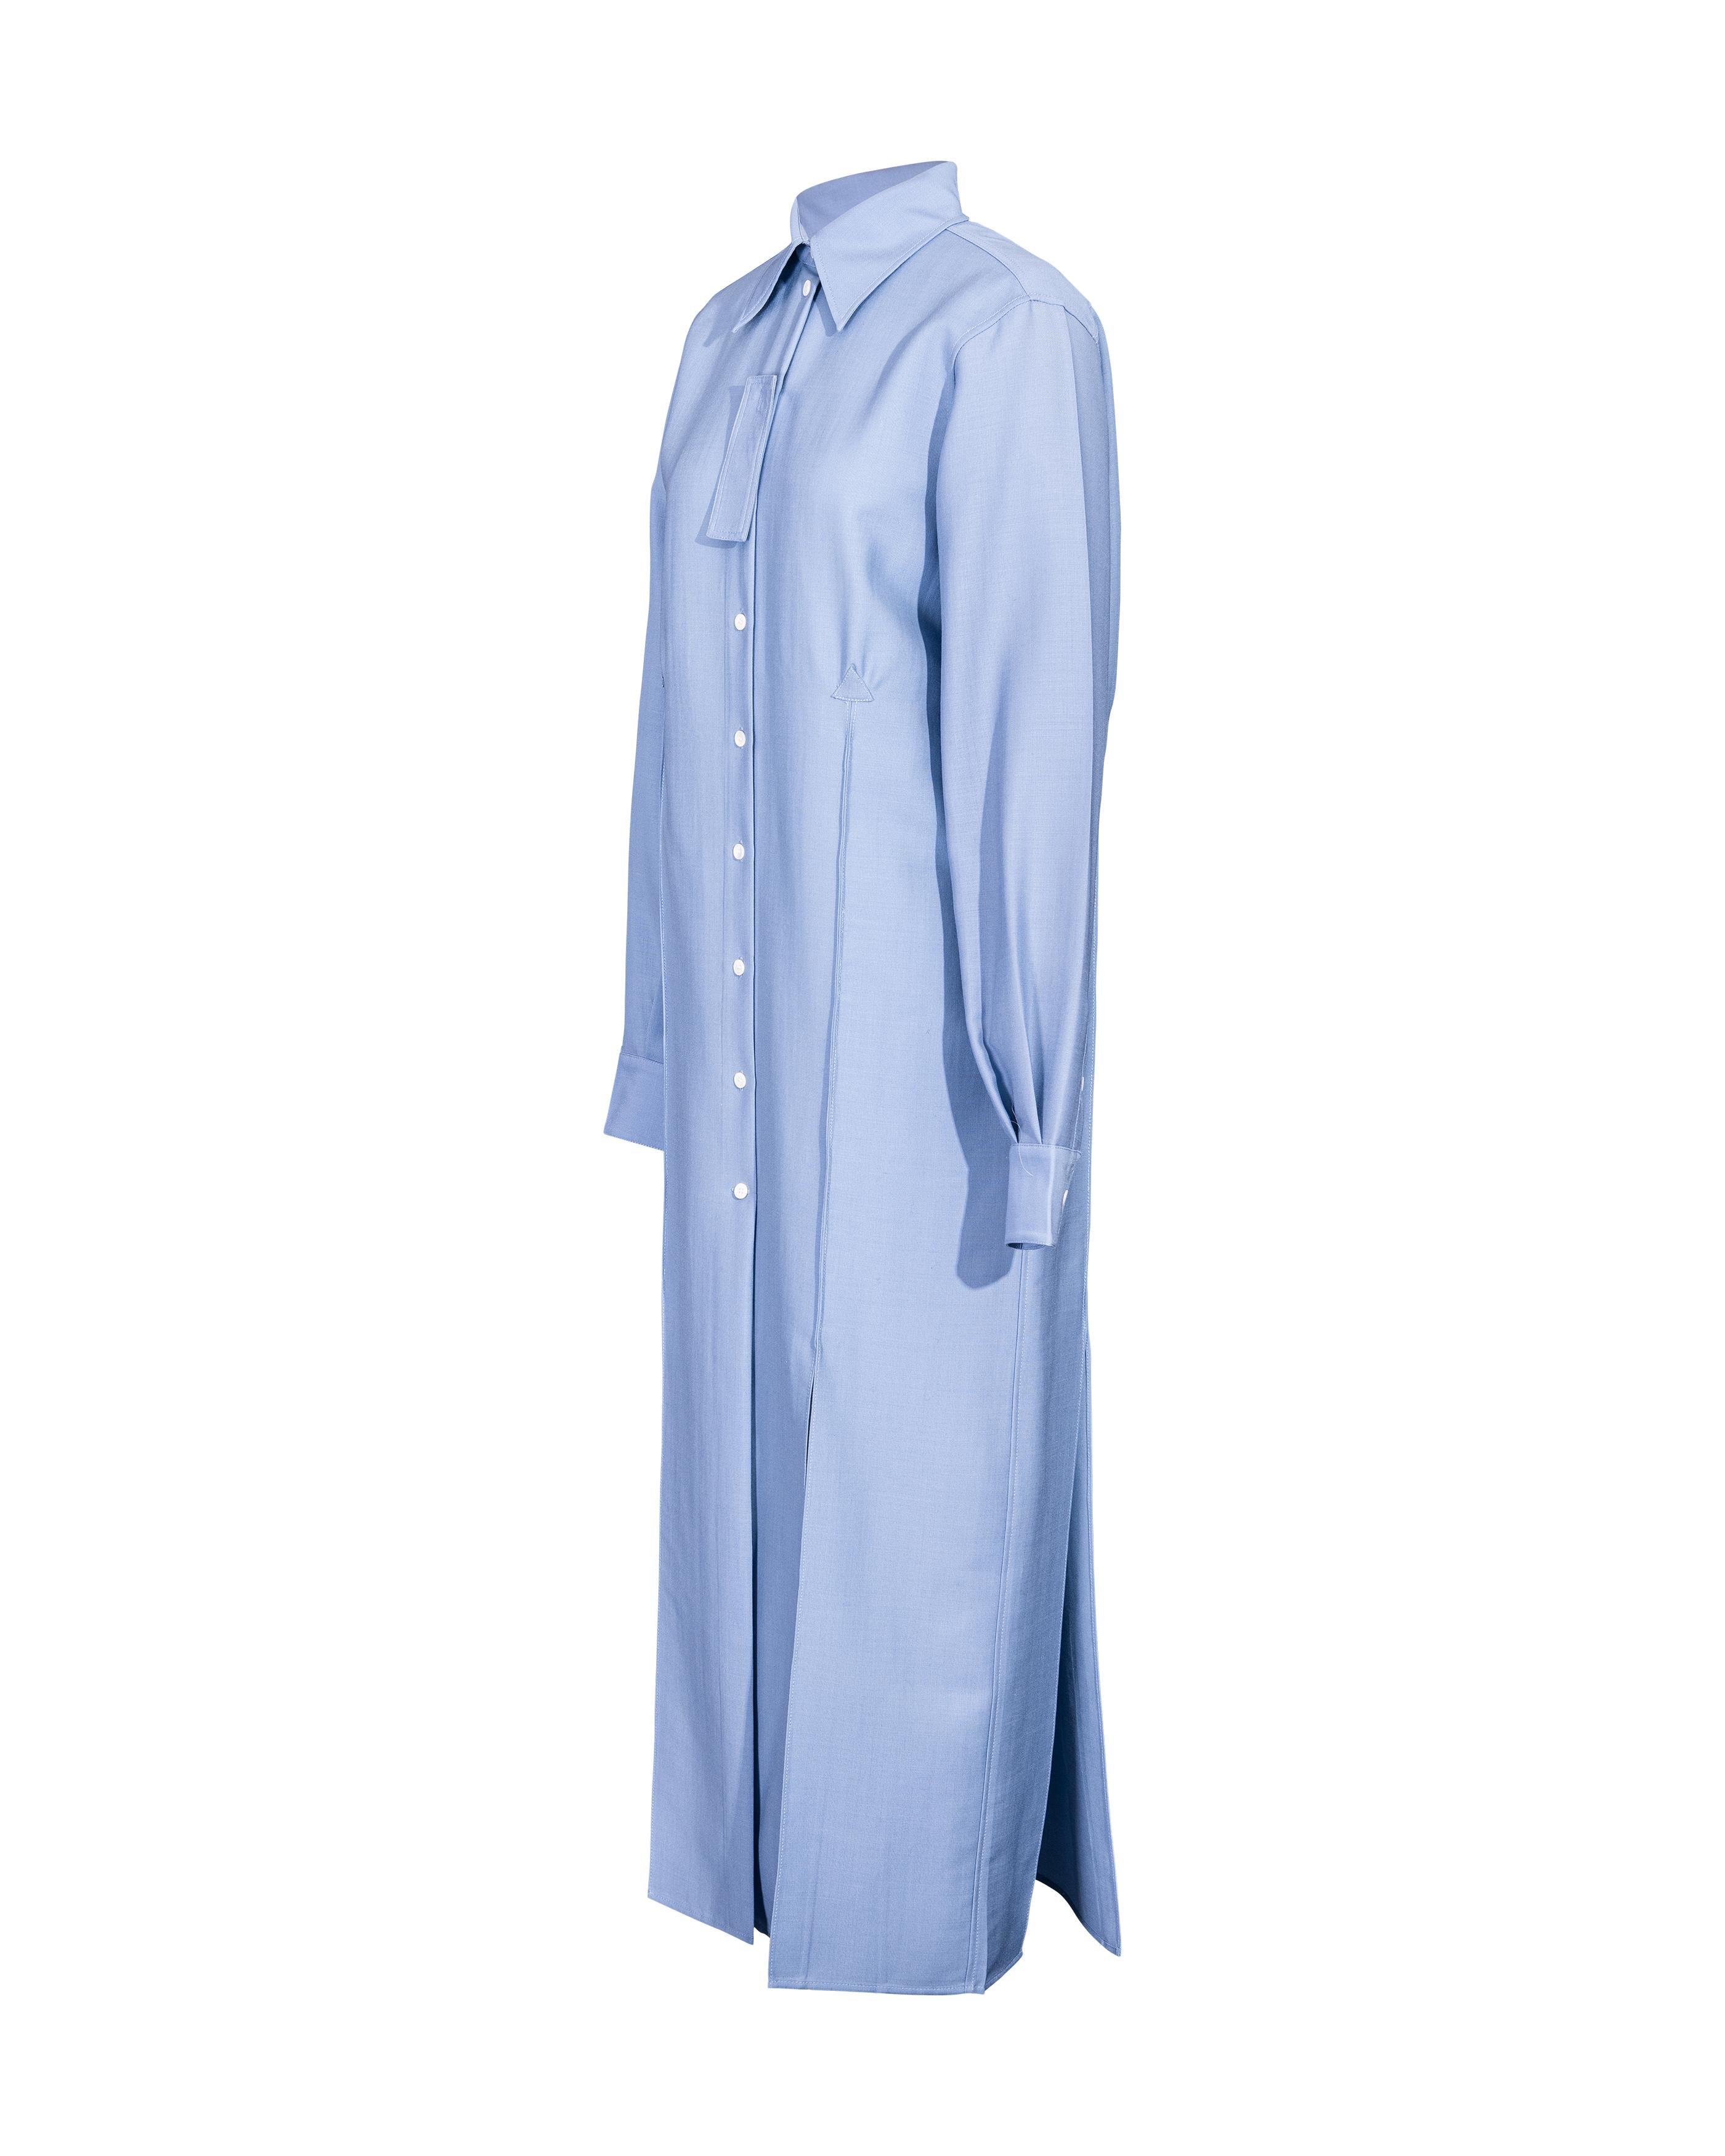 A/W 2017 Céline by Phoebe Philo Button-Up Light Blue Shirt Dress For Sale 1